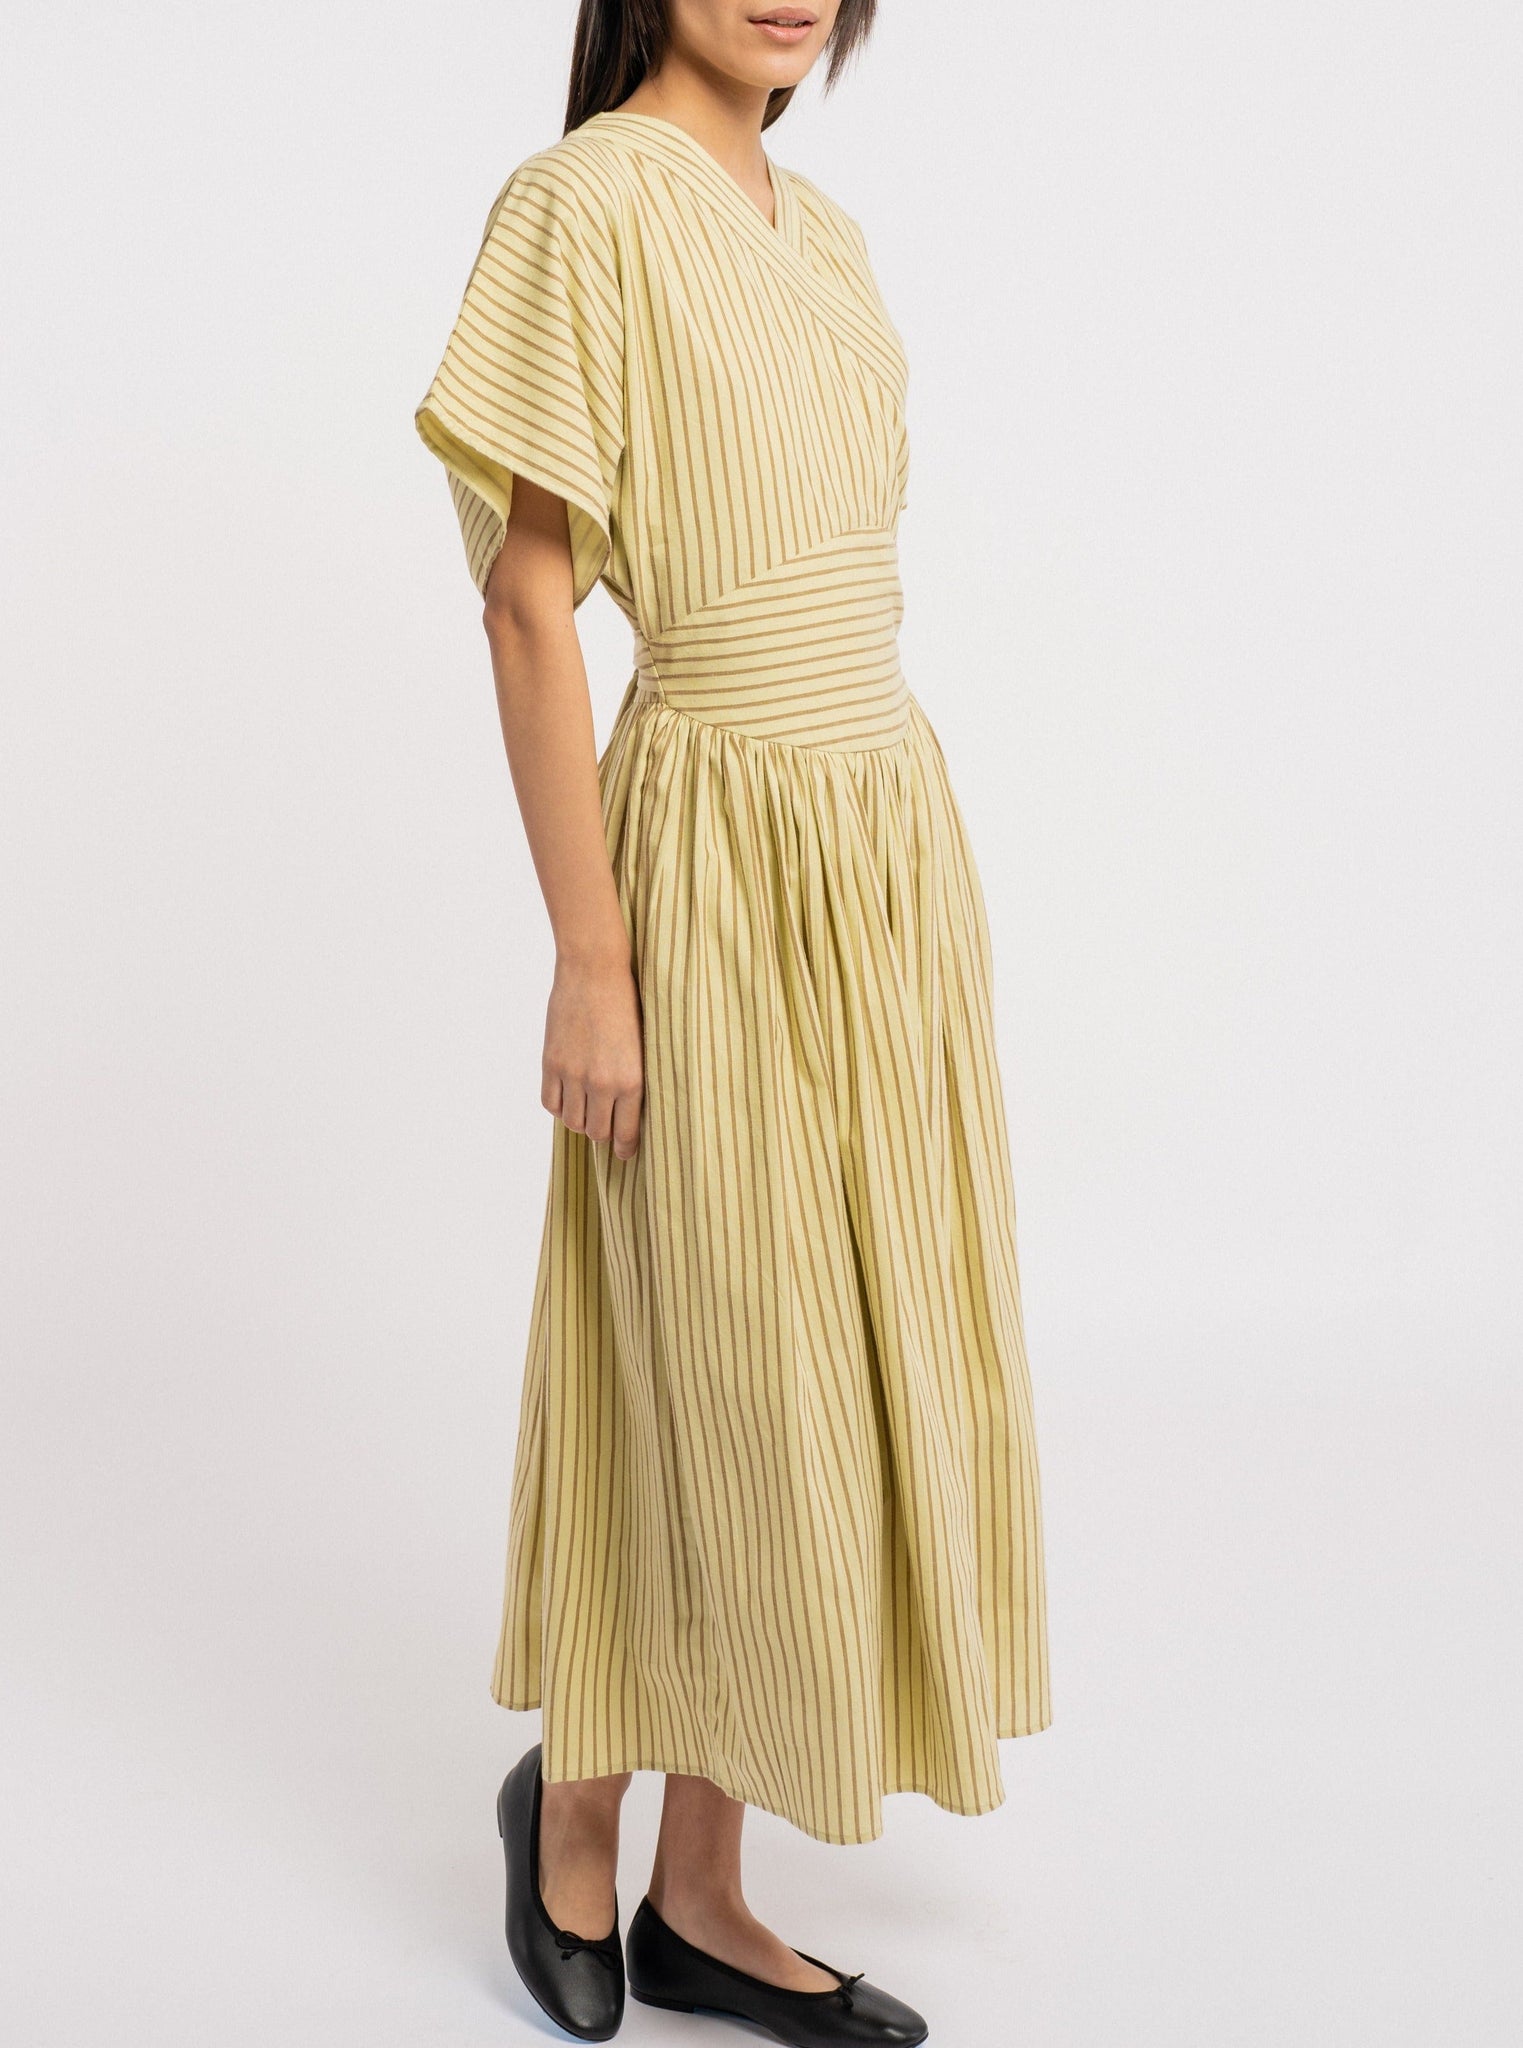 A handmade model wearing an Anita Dress - Feather Grass Stripe.